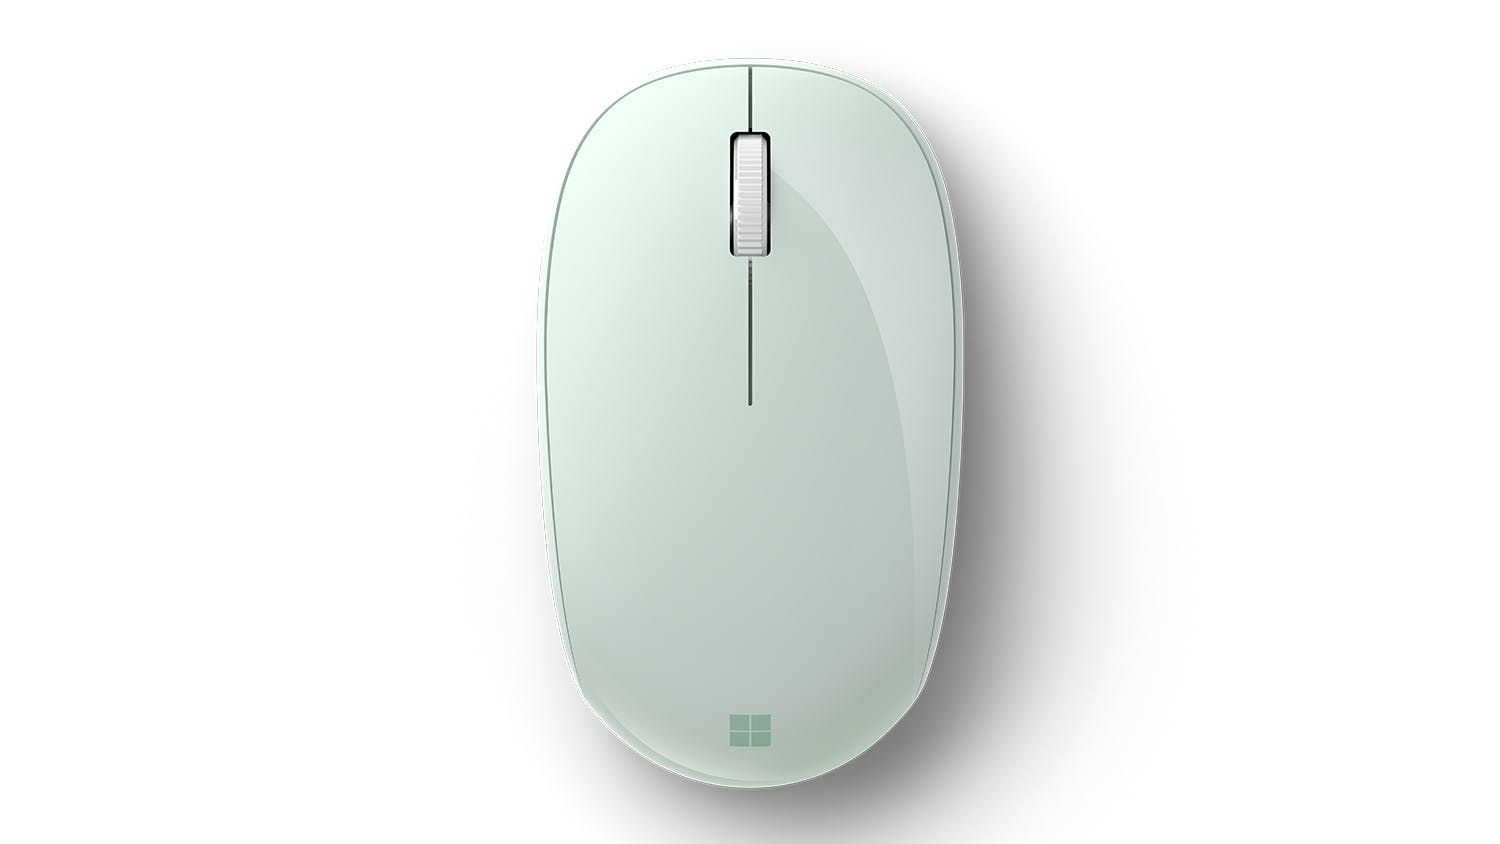 Chuột không dây Microsoft Bluetooth Mouse RJN-00029 có thiết kế đẹp và đơn giản